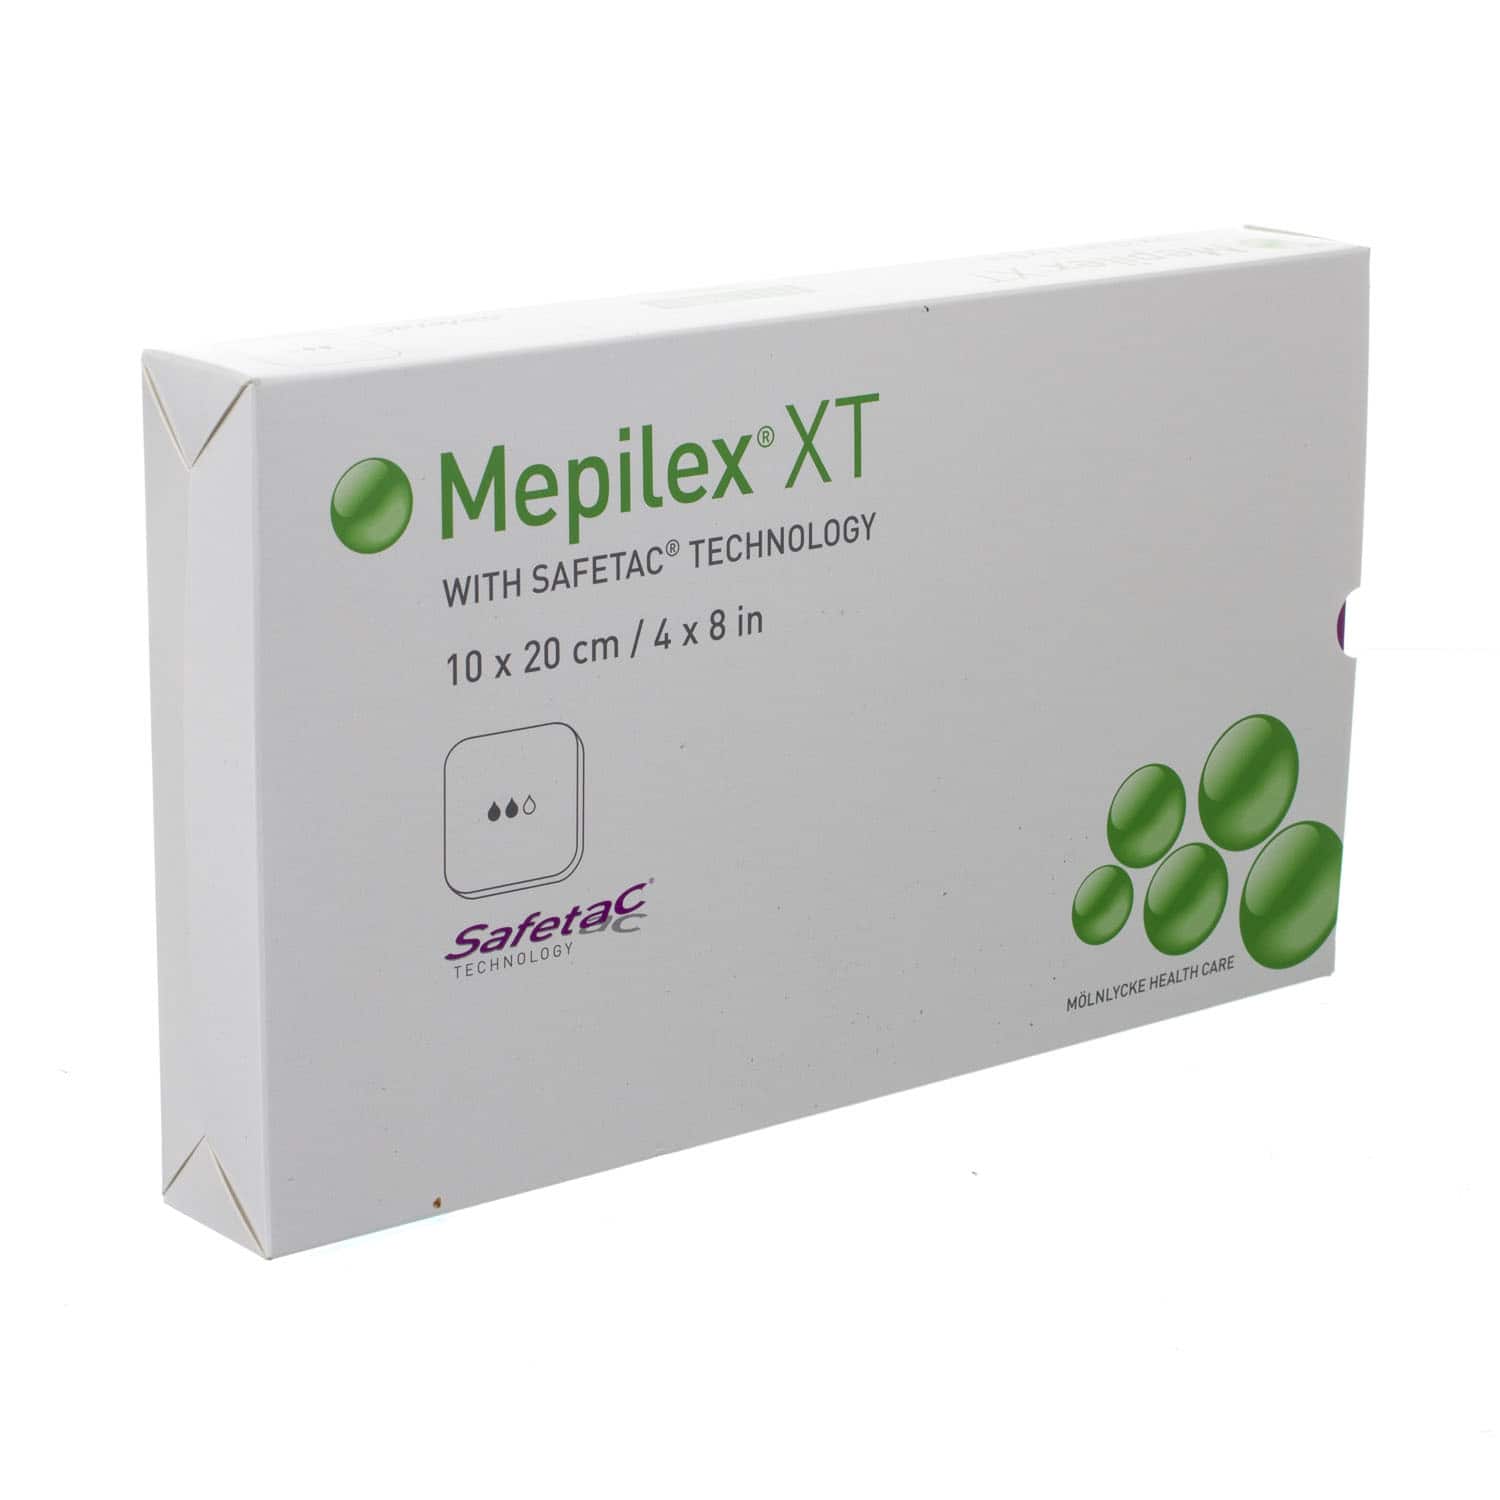 Mepilex XT 10 x 20 cm